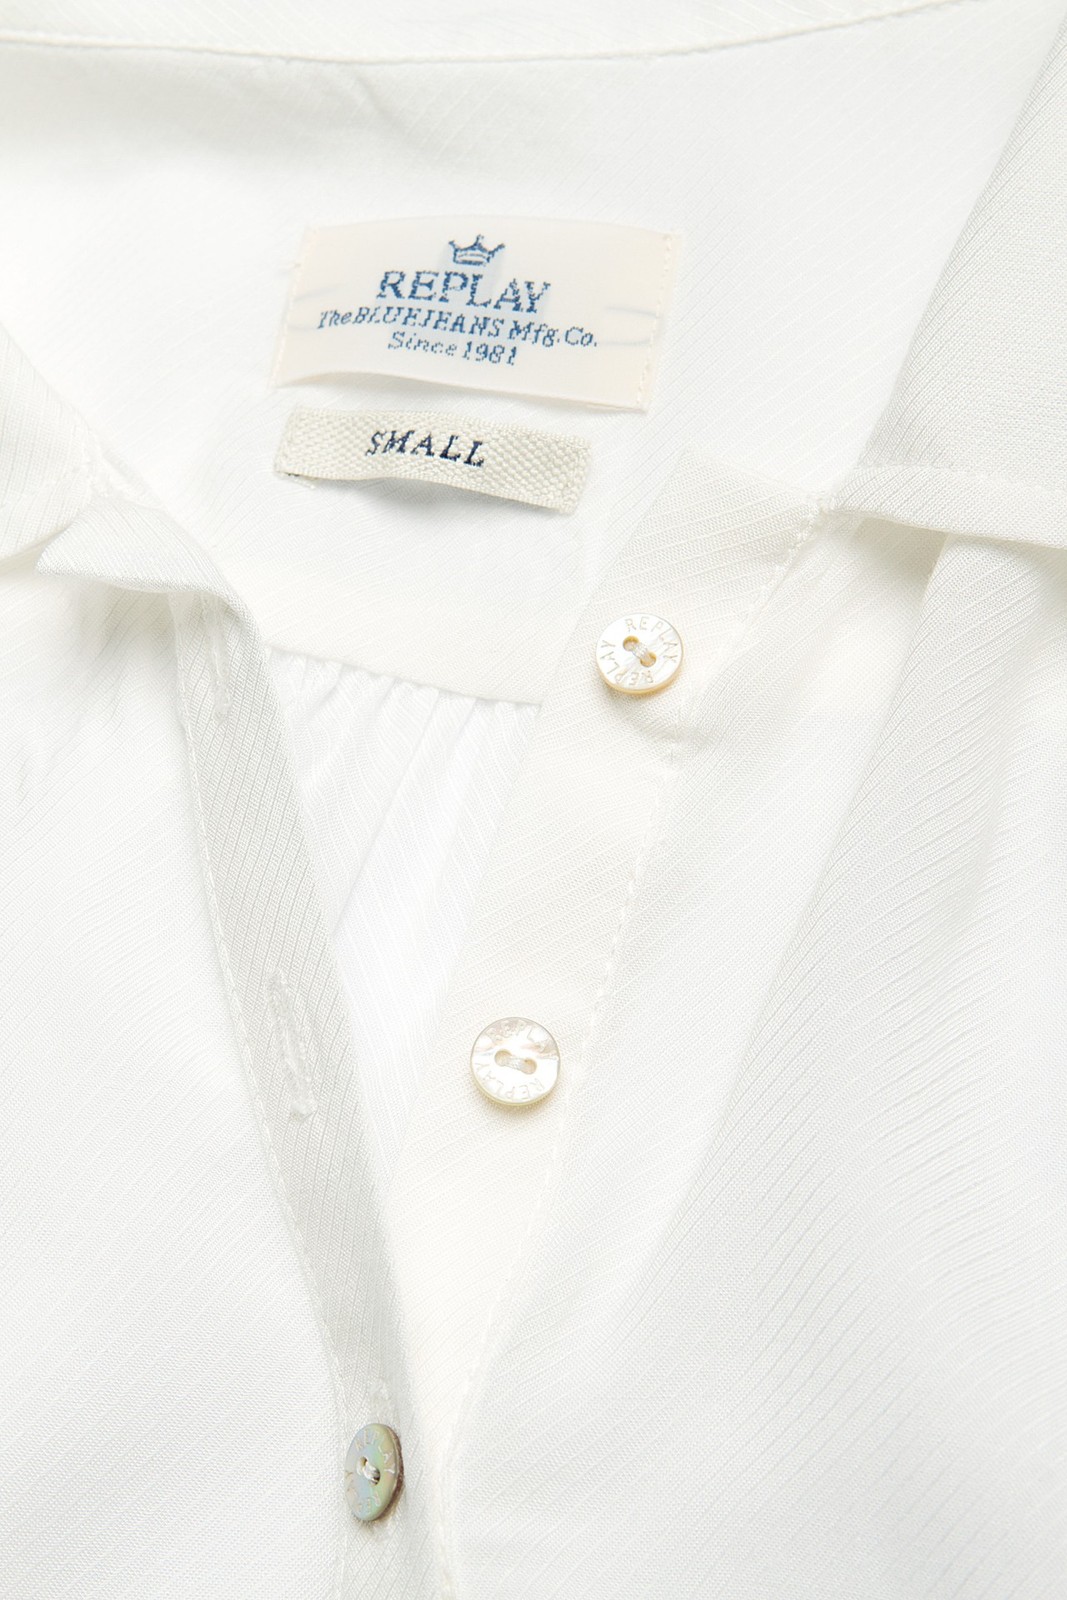 Replay ujjatlan viszkóz műselyem ing oldalhasítékkal, aszimmetrikus szegéllyek 2014.5.14 fotója